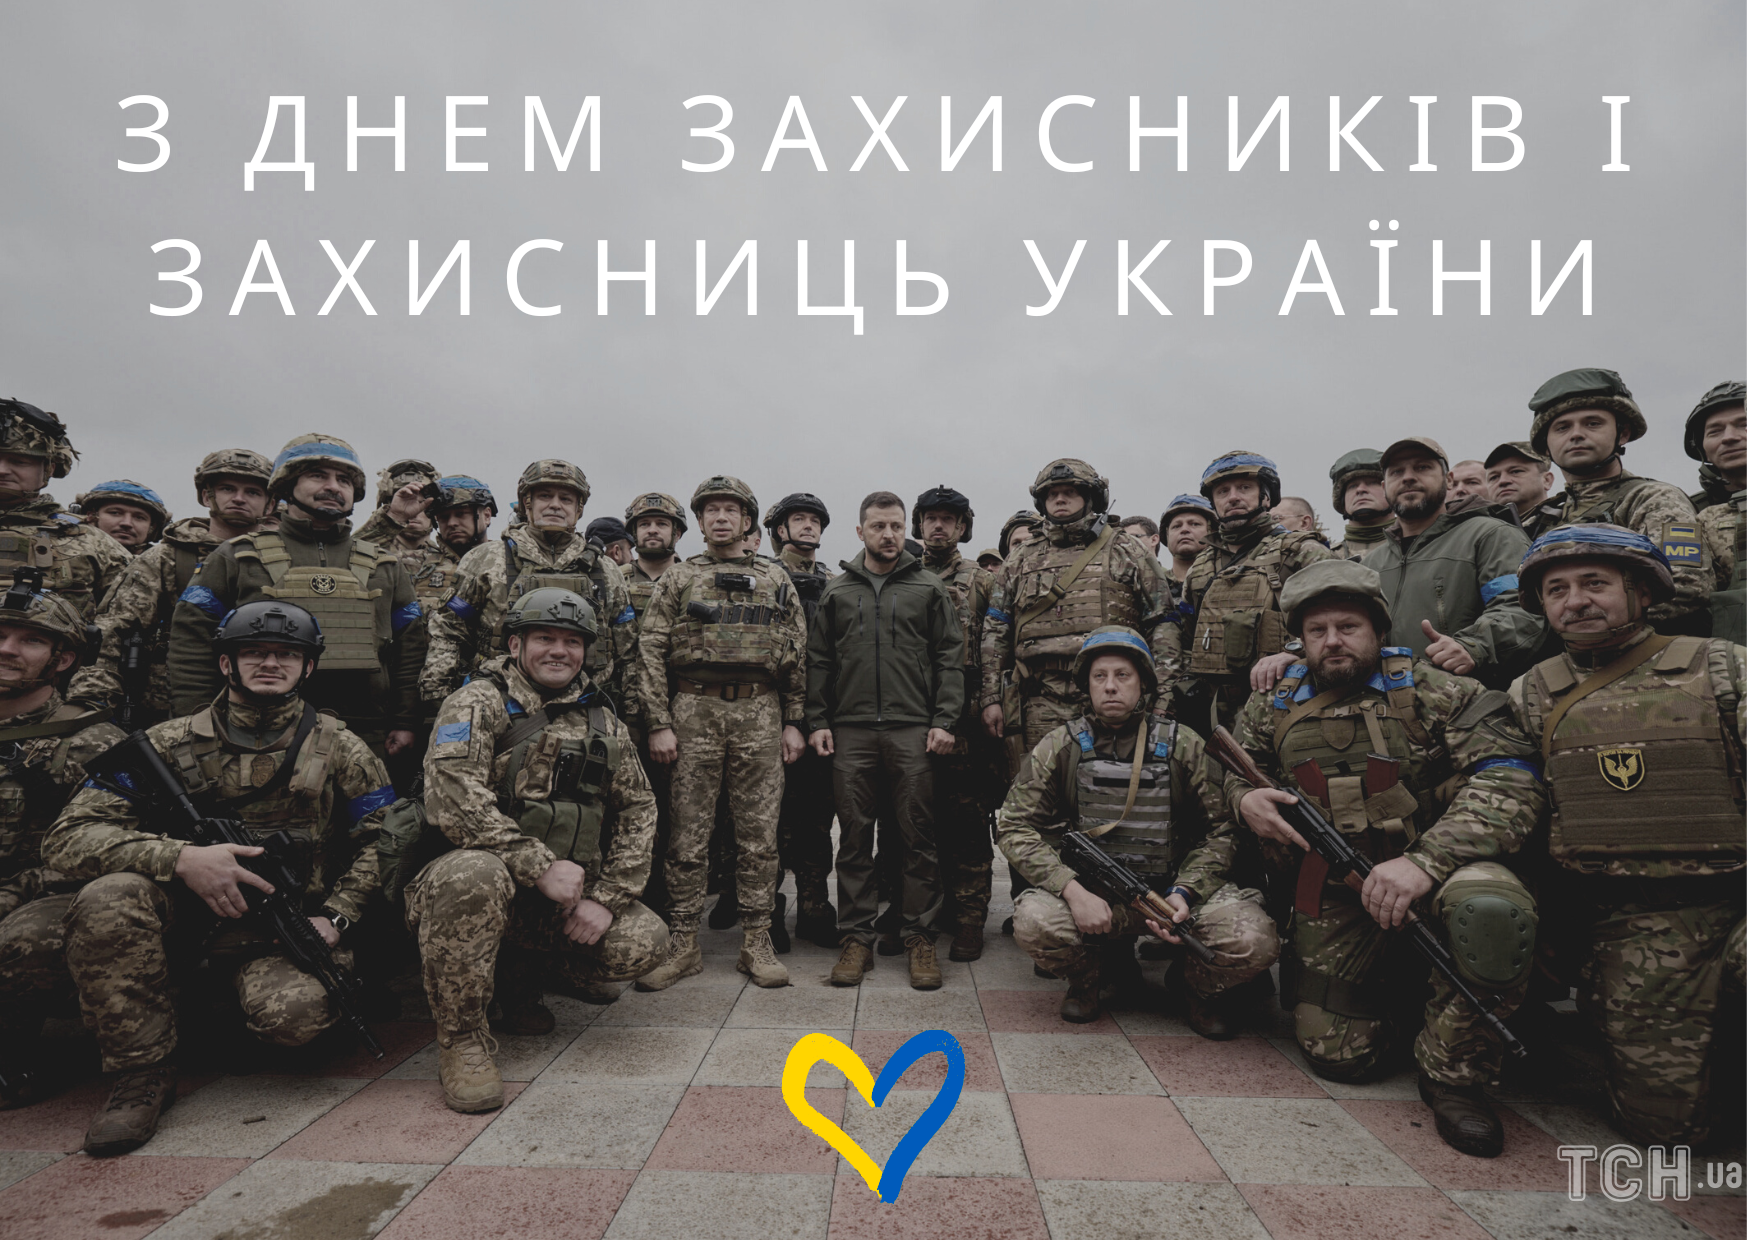 Найкращі привітання з Днем захисника України у прозі та віршах